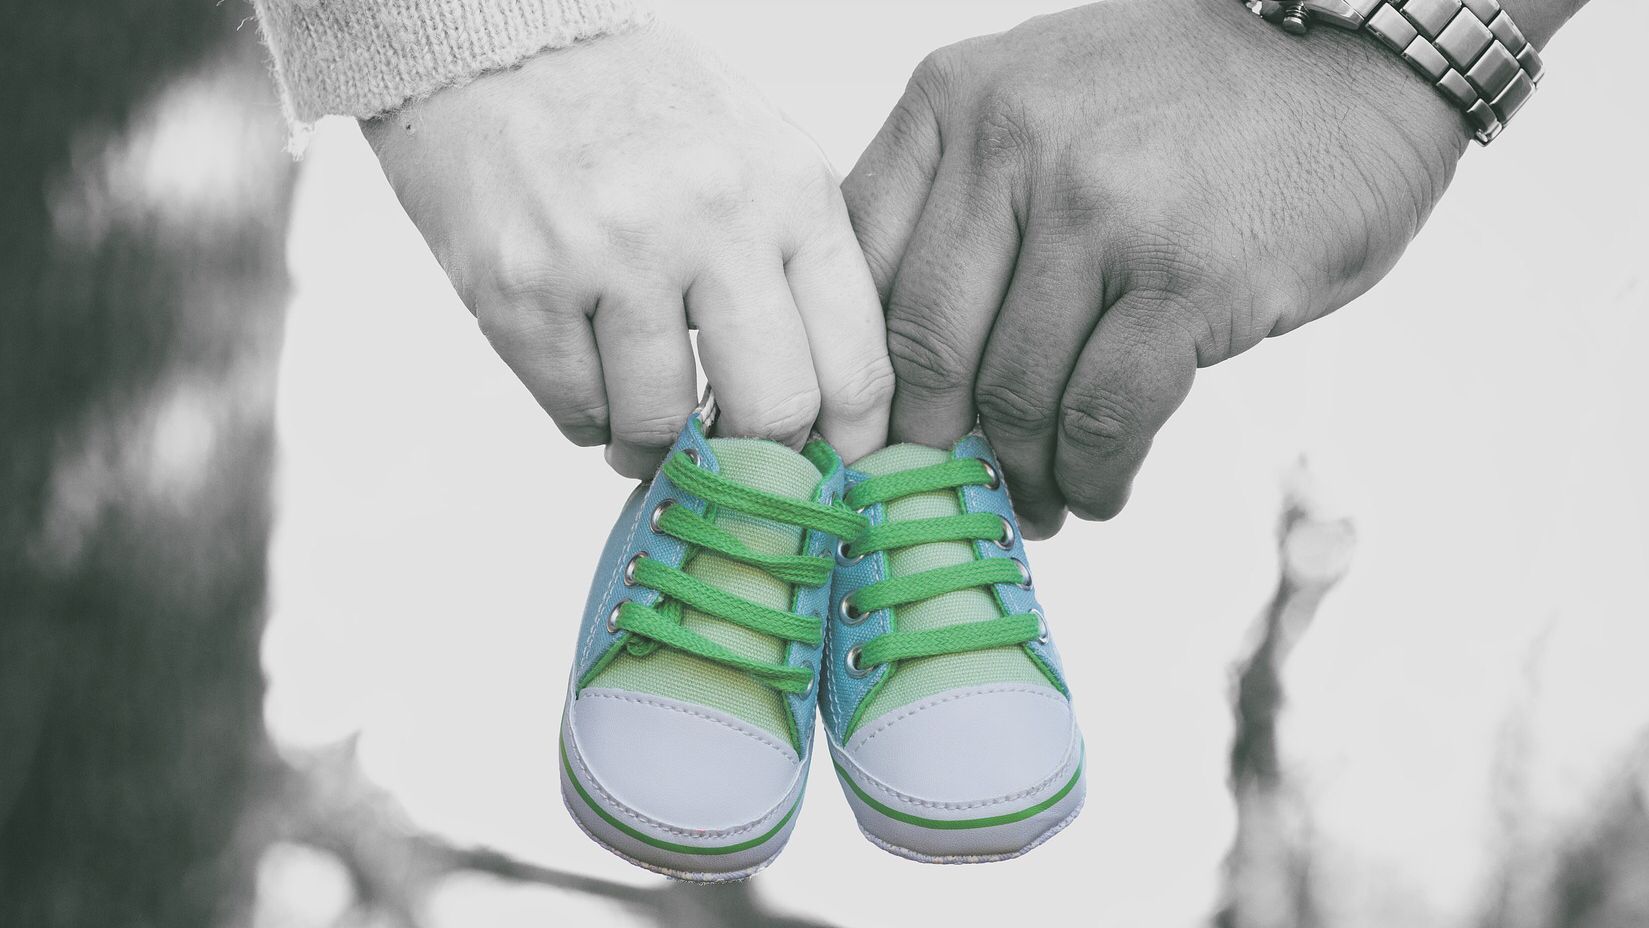 Donum Vitae bietet Paaren eine Anlaufstelle bei Fragen zum Thema Schwangerschaft und Geburt. (c) www.pixabay.com